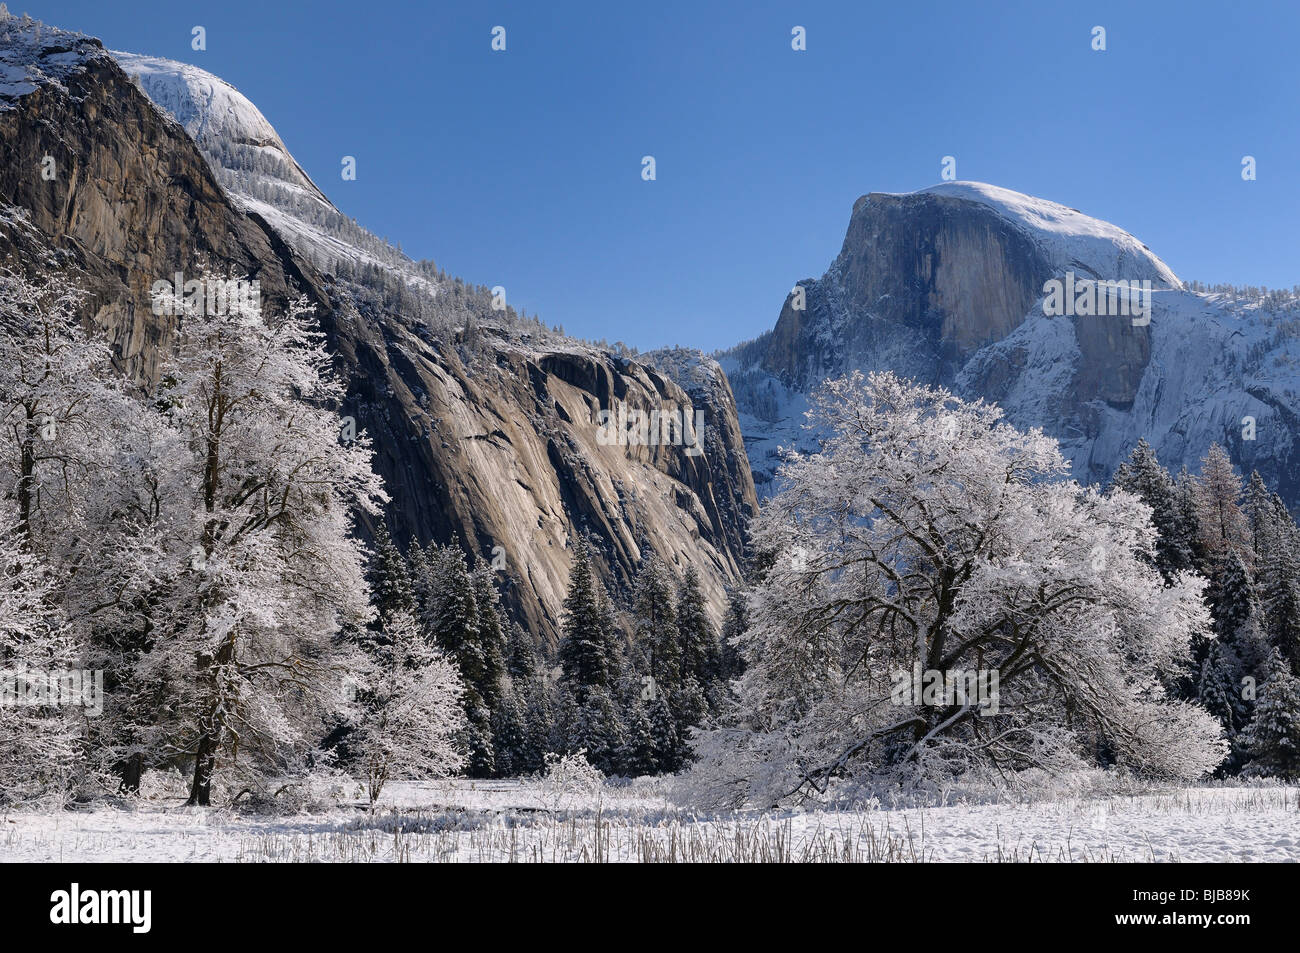 Claro después de un día de invierno las nevadas en cocineros prado con árboles cubiertos de nieve y la cúpula del norte picos Half Dome, el parque nacional de Yosemite california ee.uu. Foto de stock